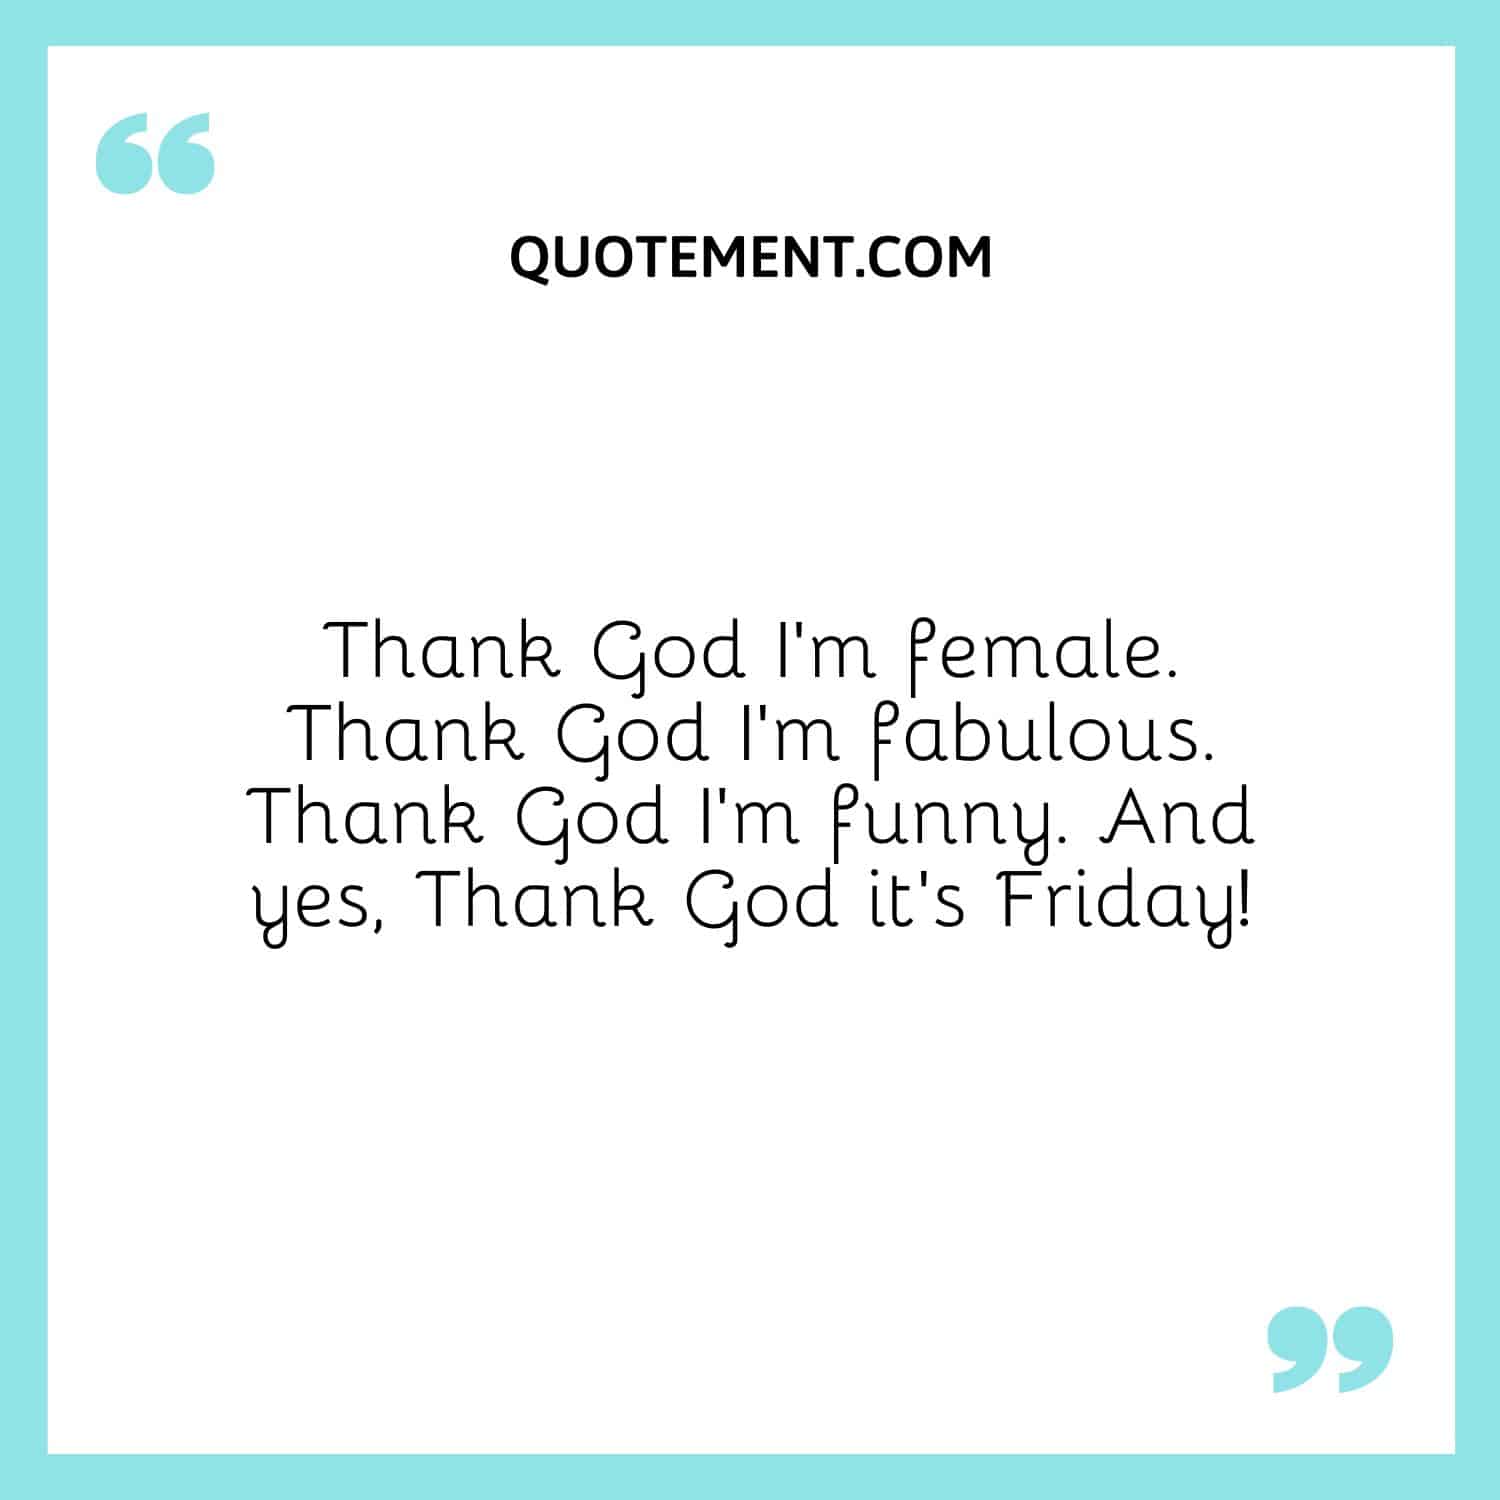 Thank God I’m female. Thank God I’m fabulous